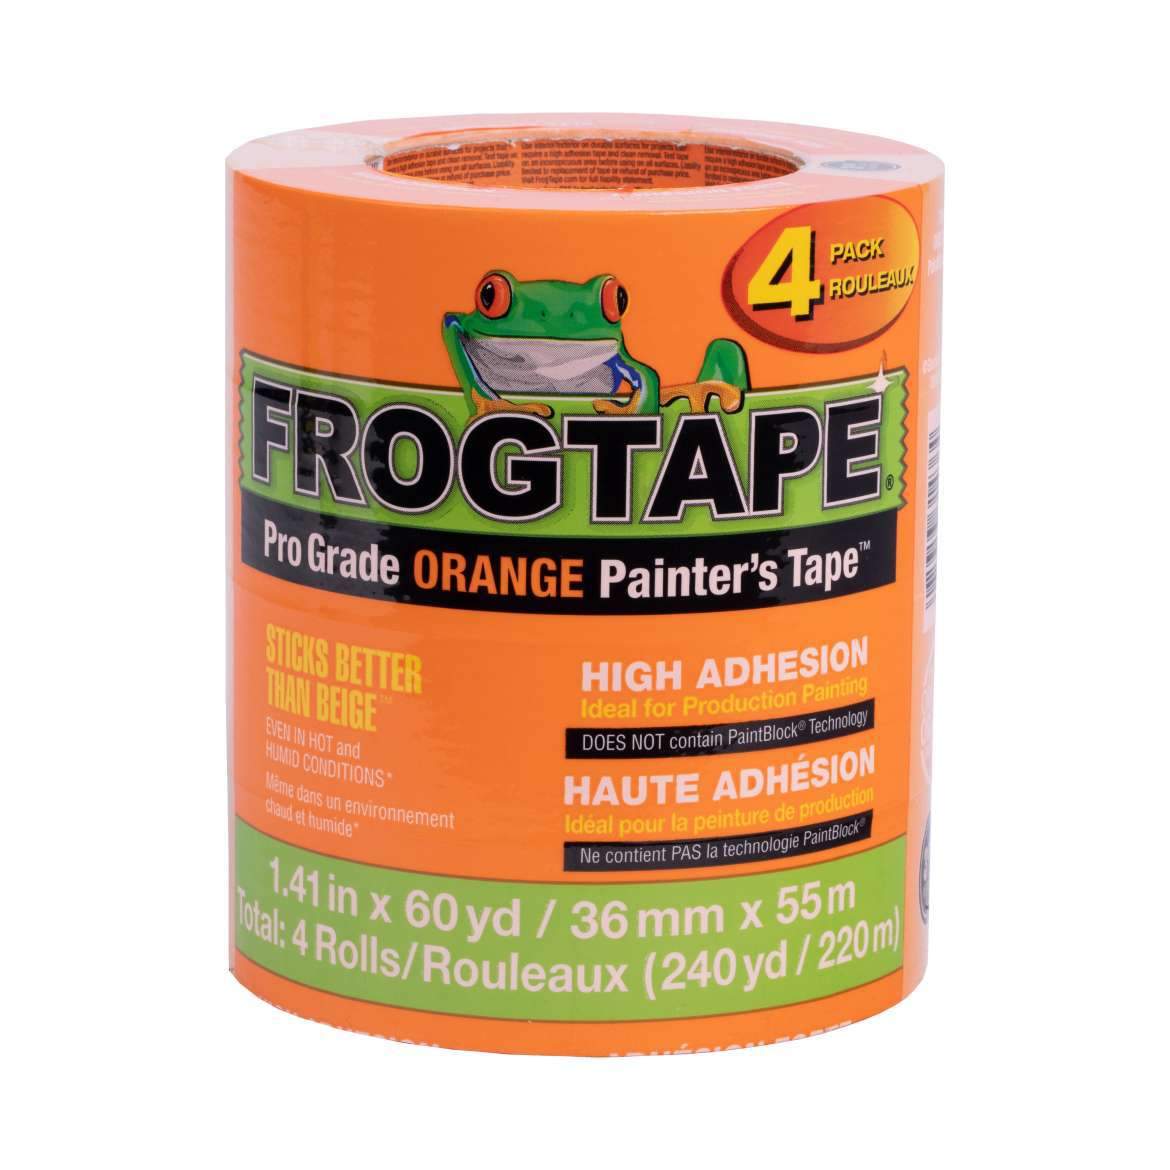 FrogTape Pro Grade 1.41 in. x 60 yd. Blue Painter's Tape Blue, 6